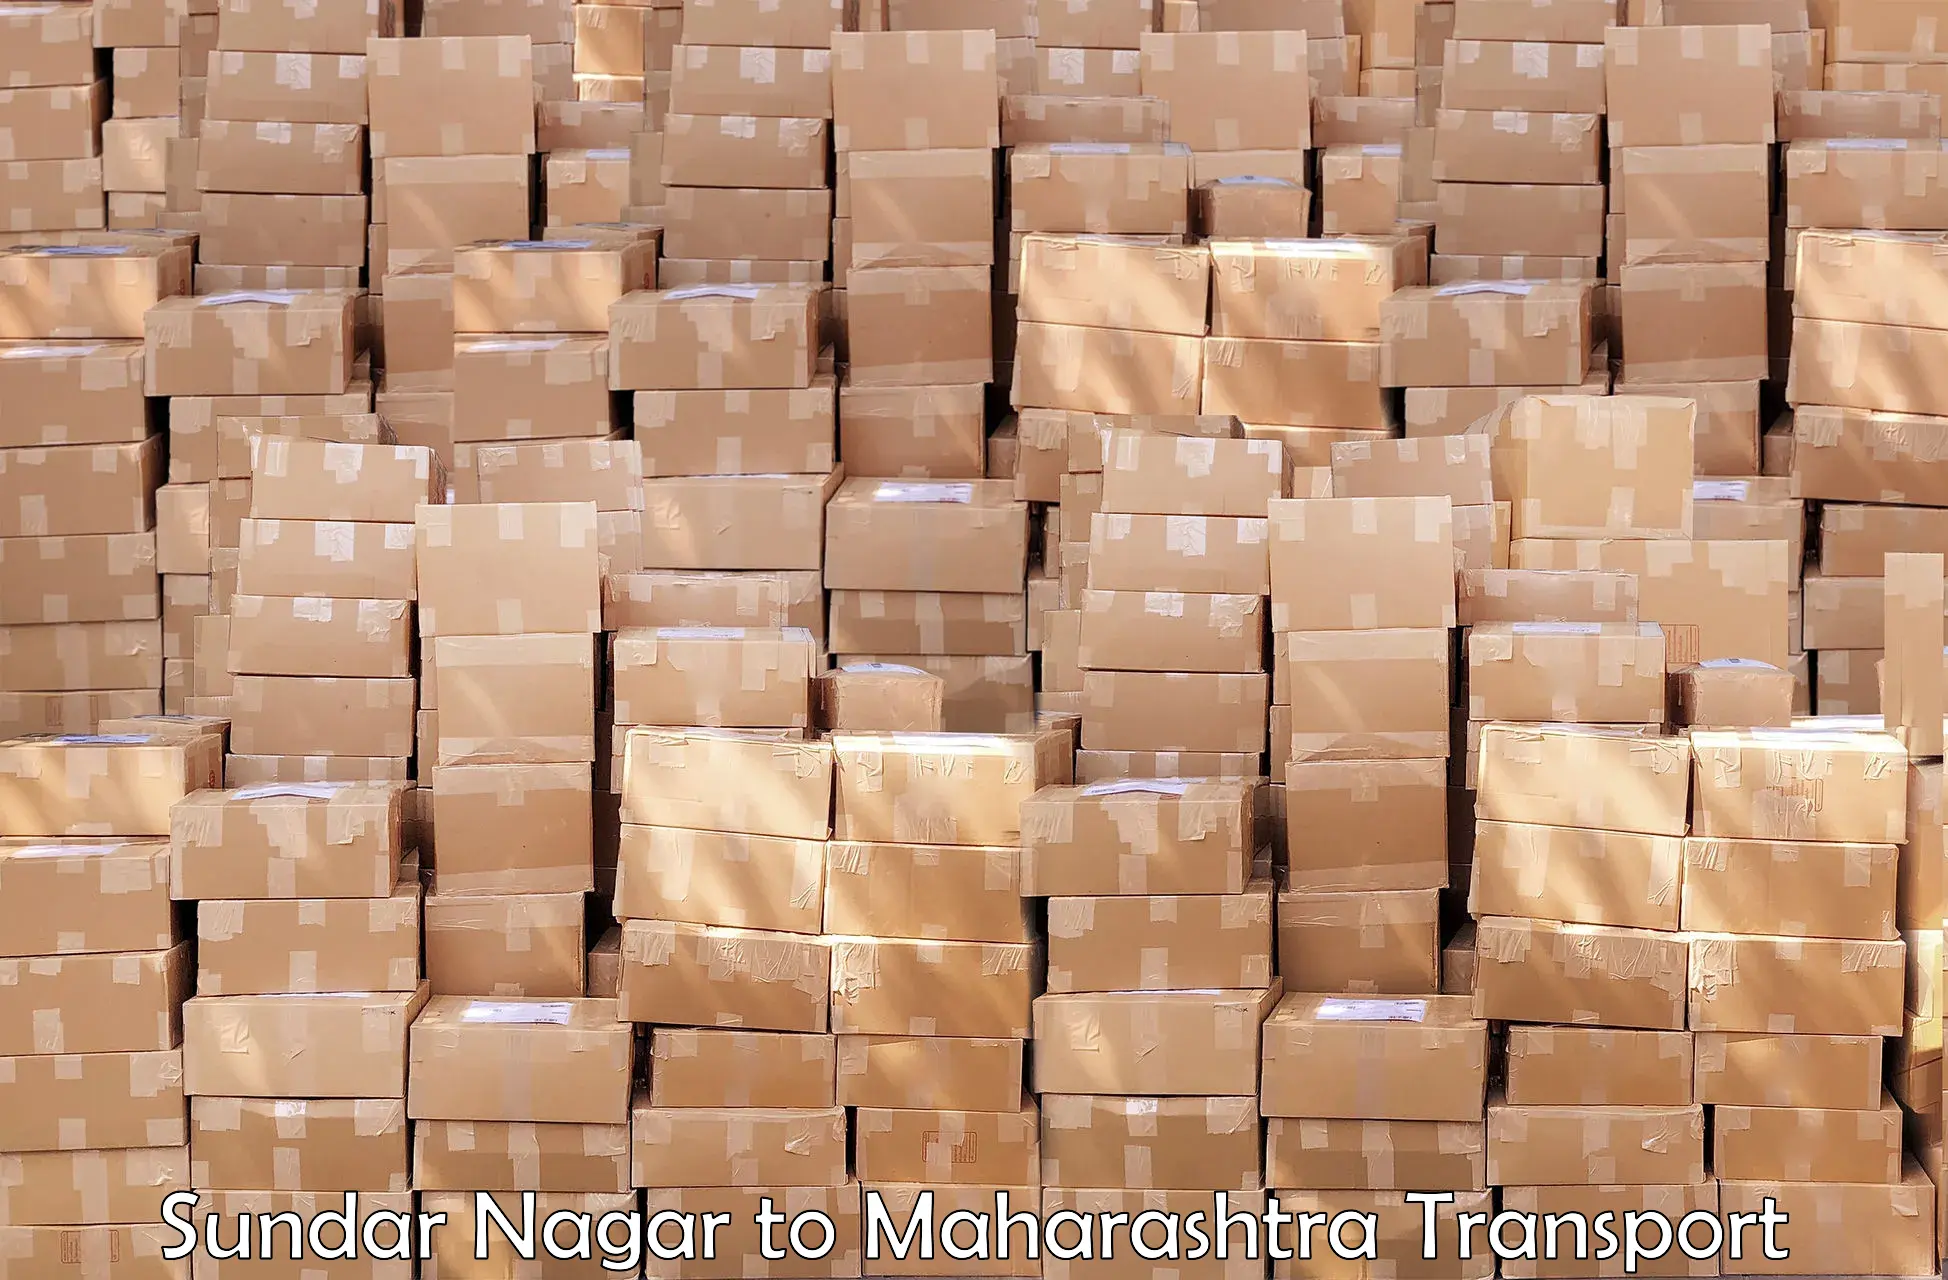 Container transport service Sundar Nagar to Supe